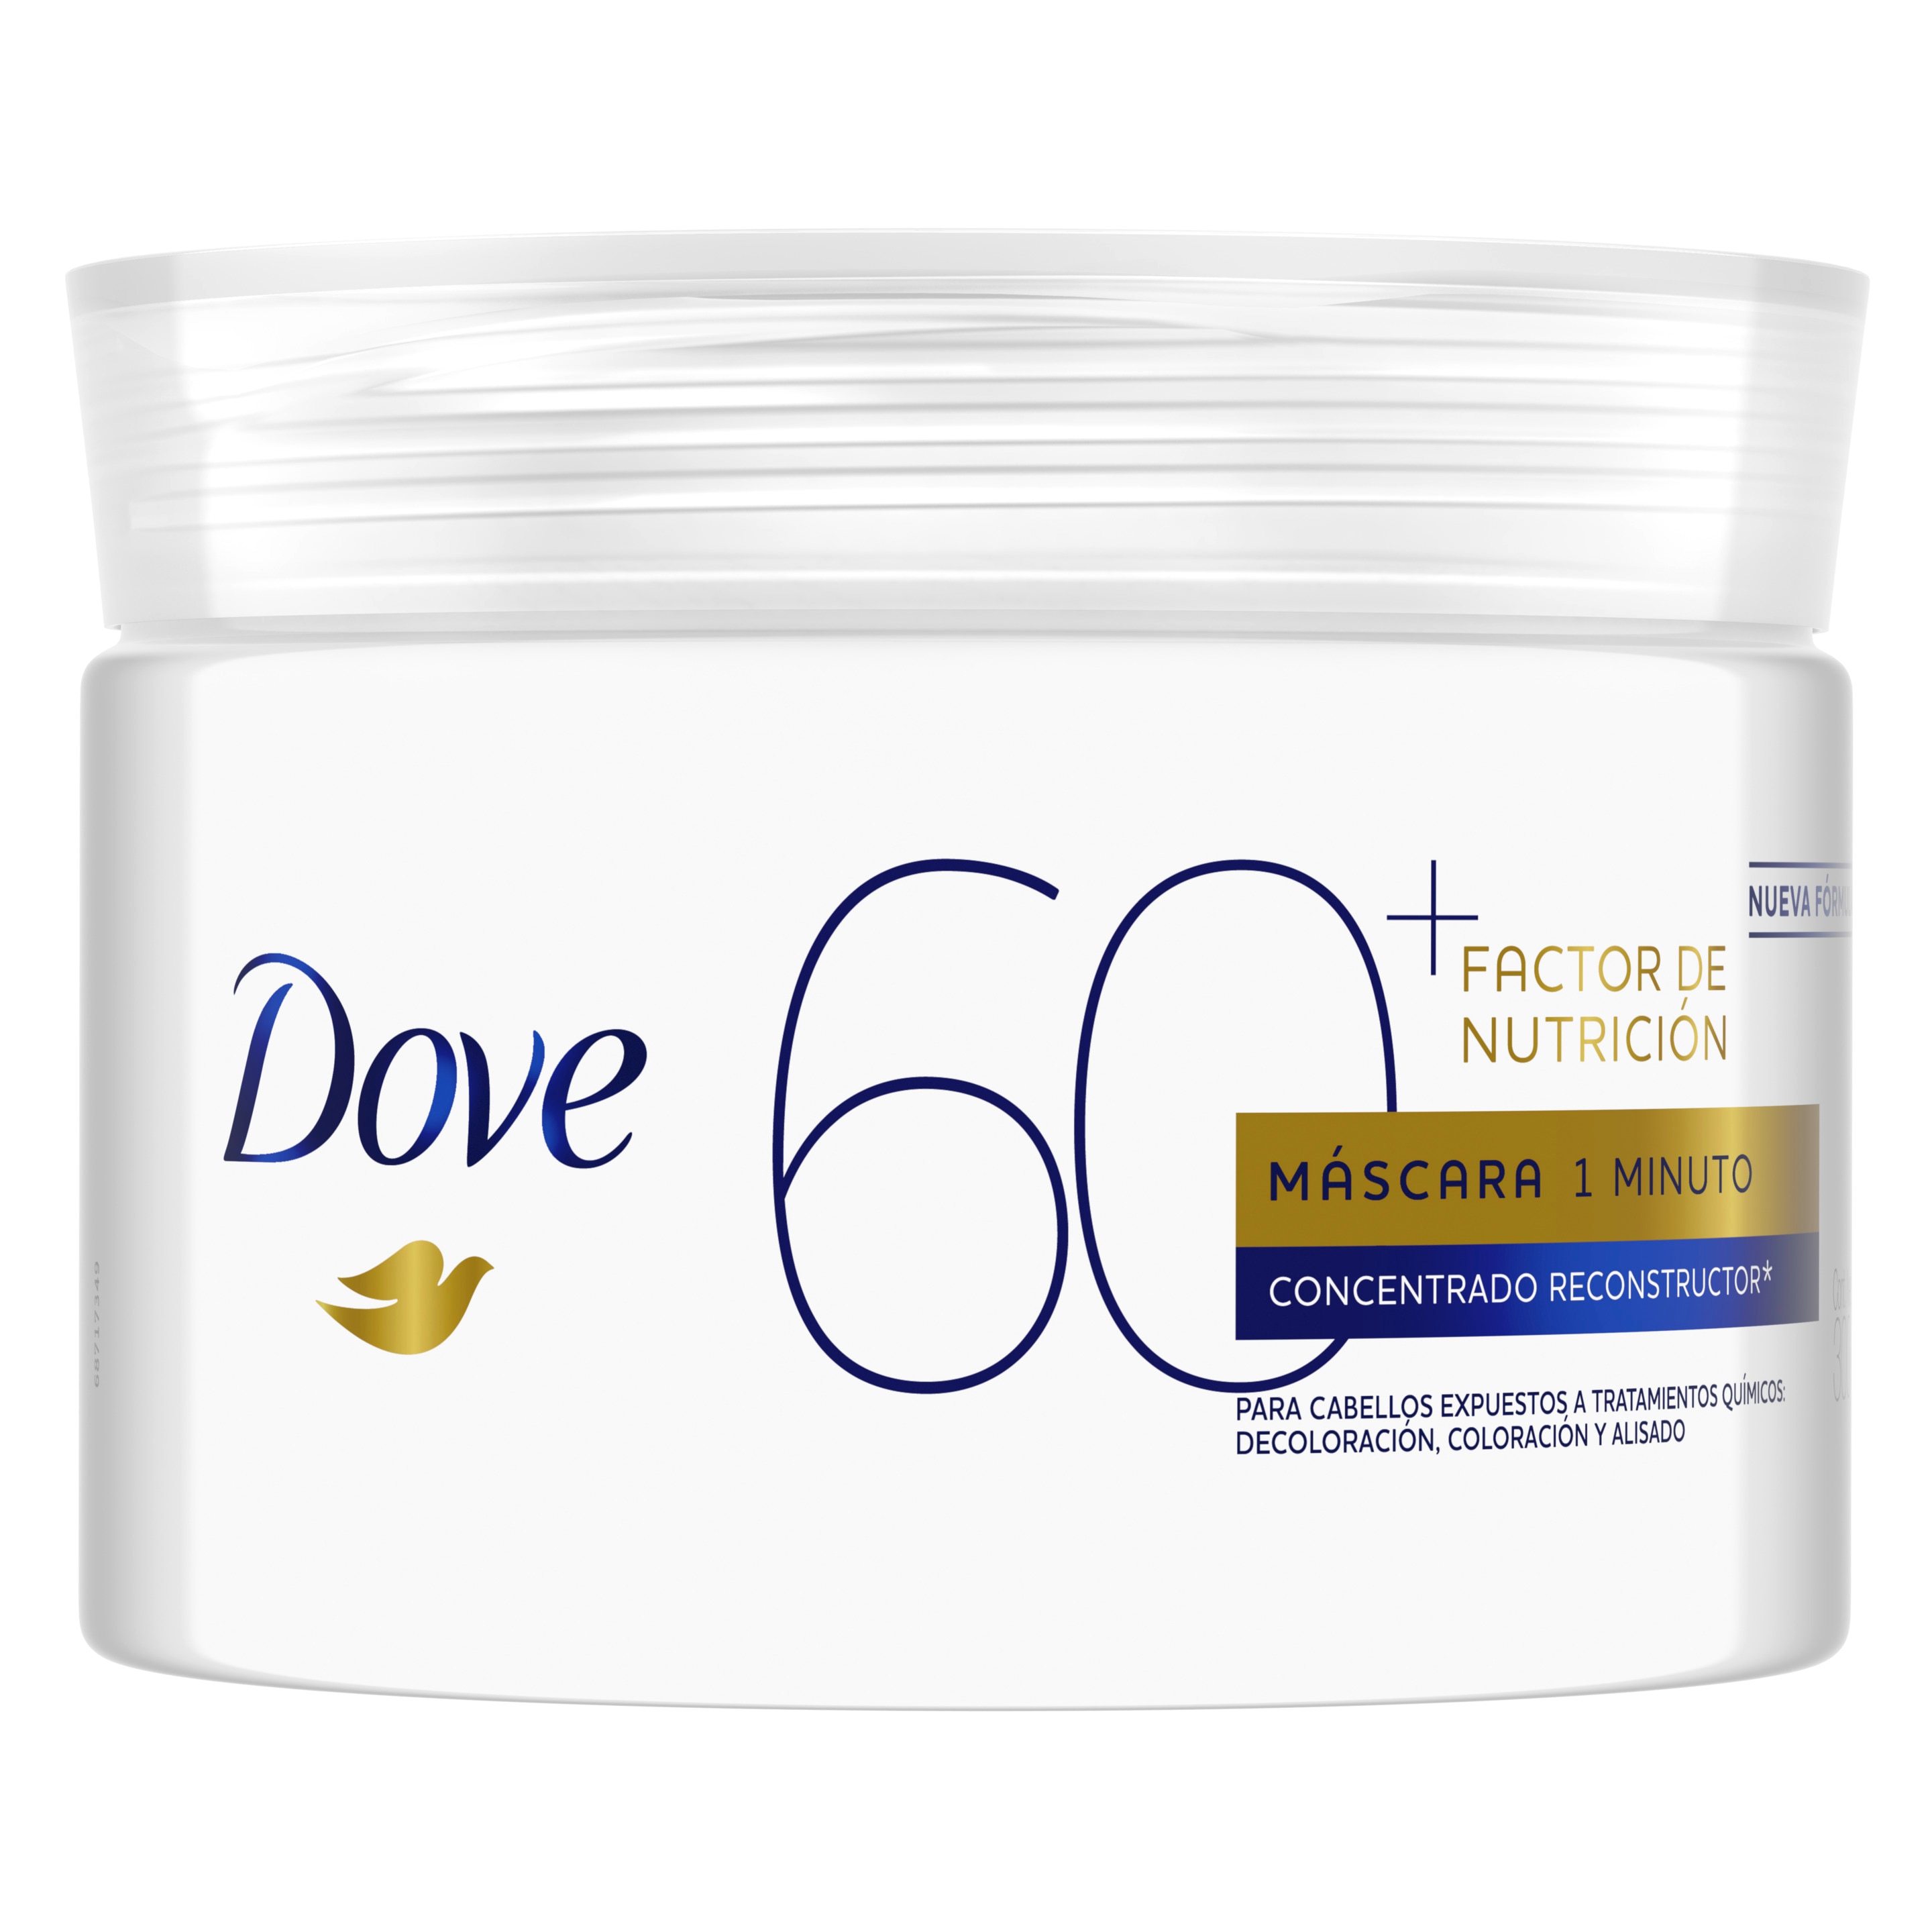 Imagen de envase Dove máscara de tratamiento factor de nutrición 60